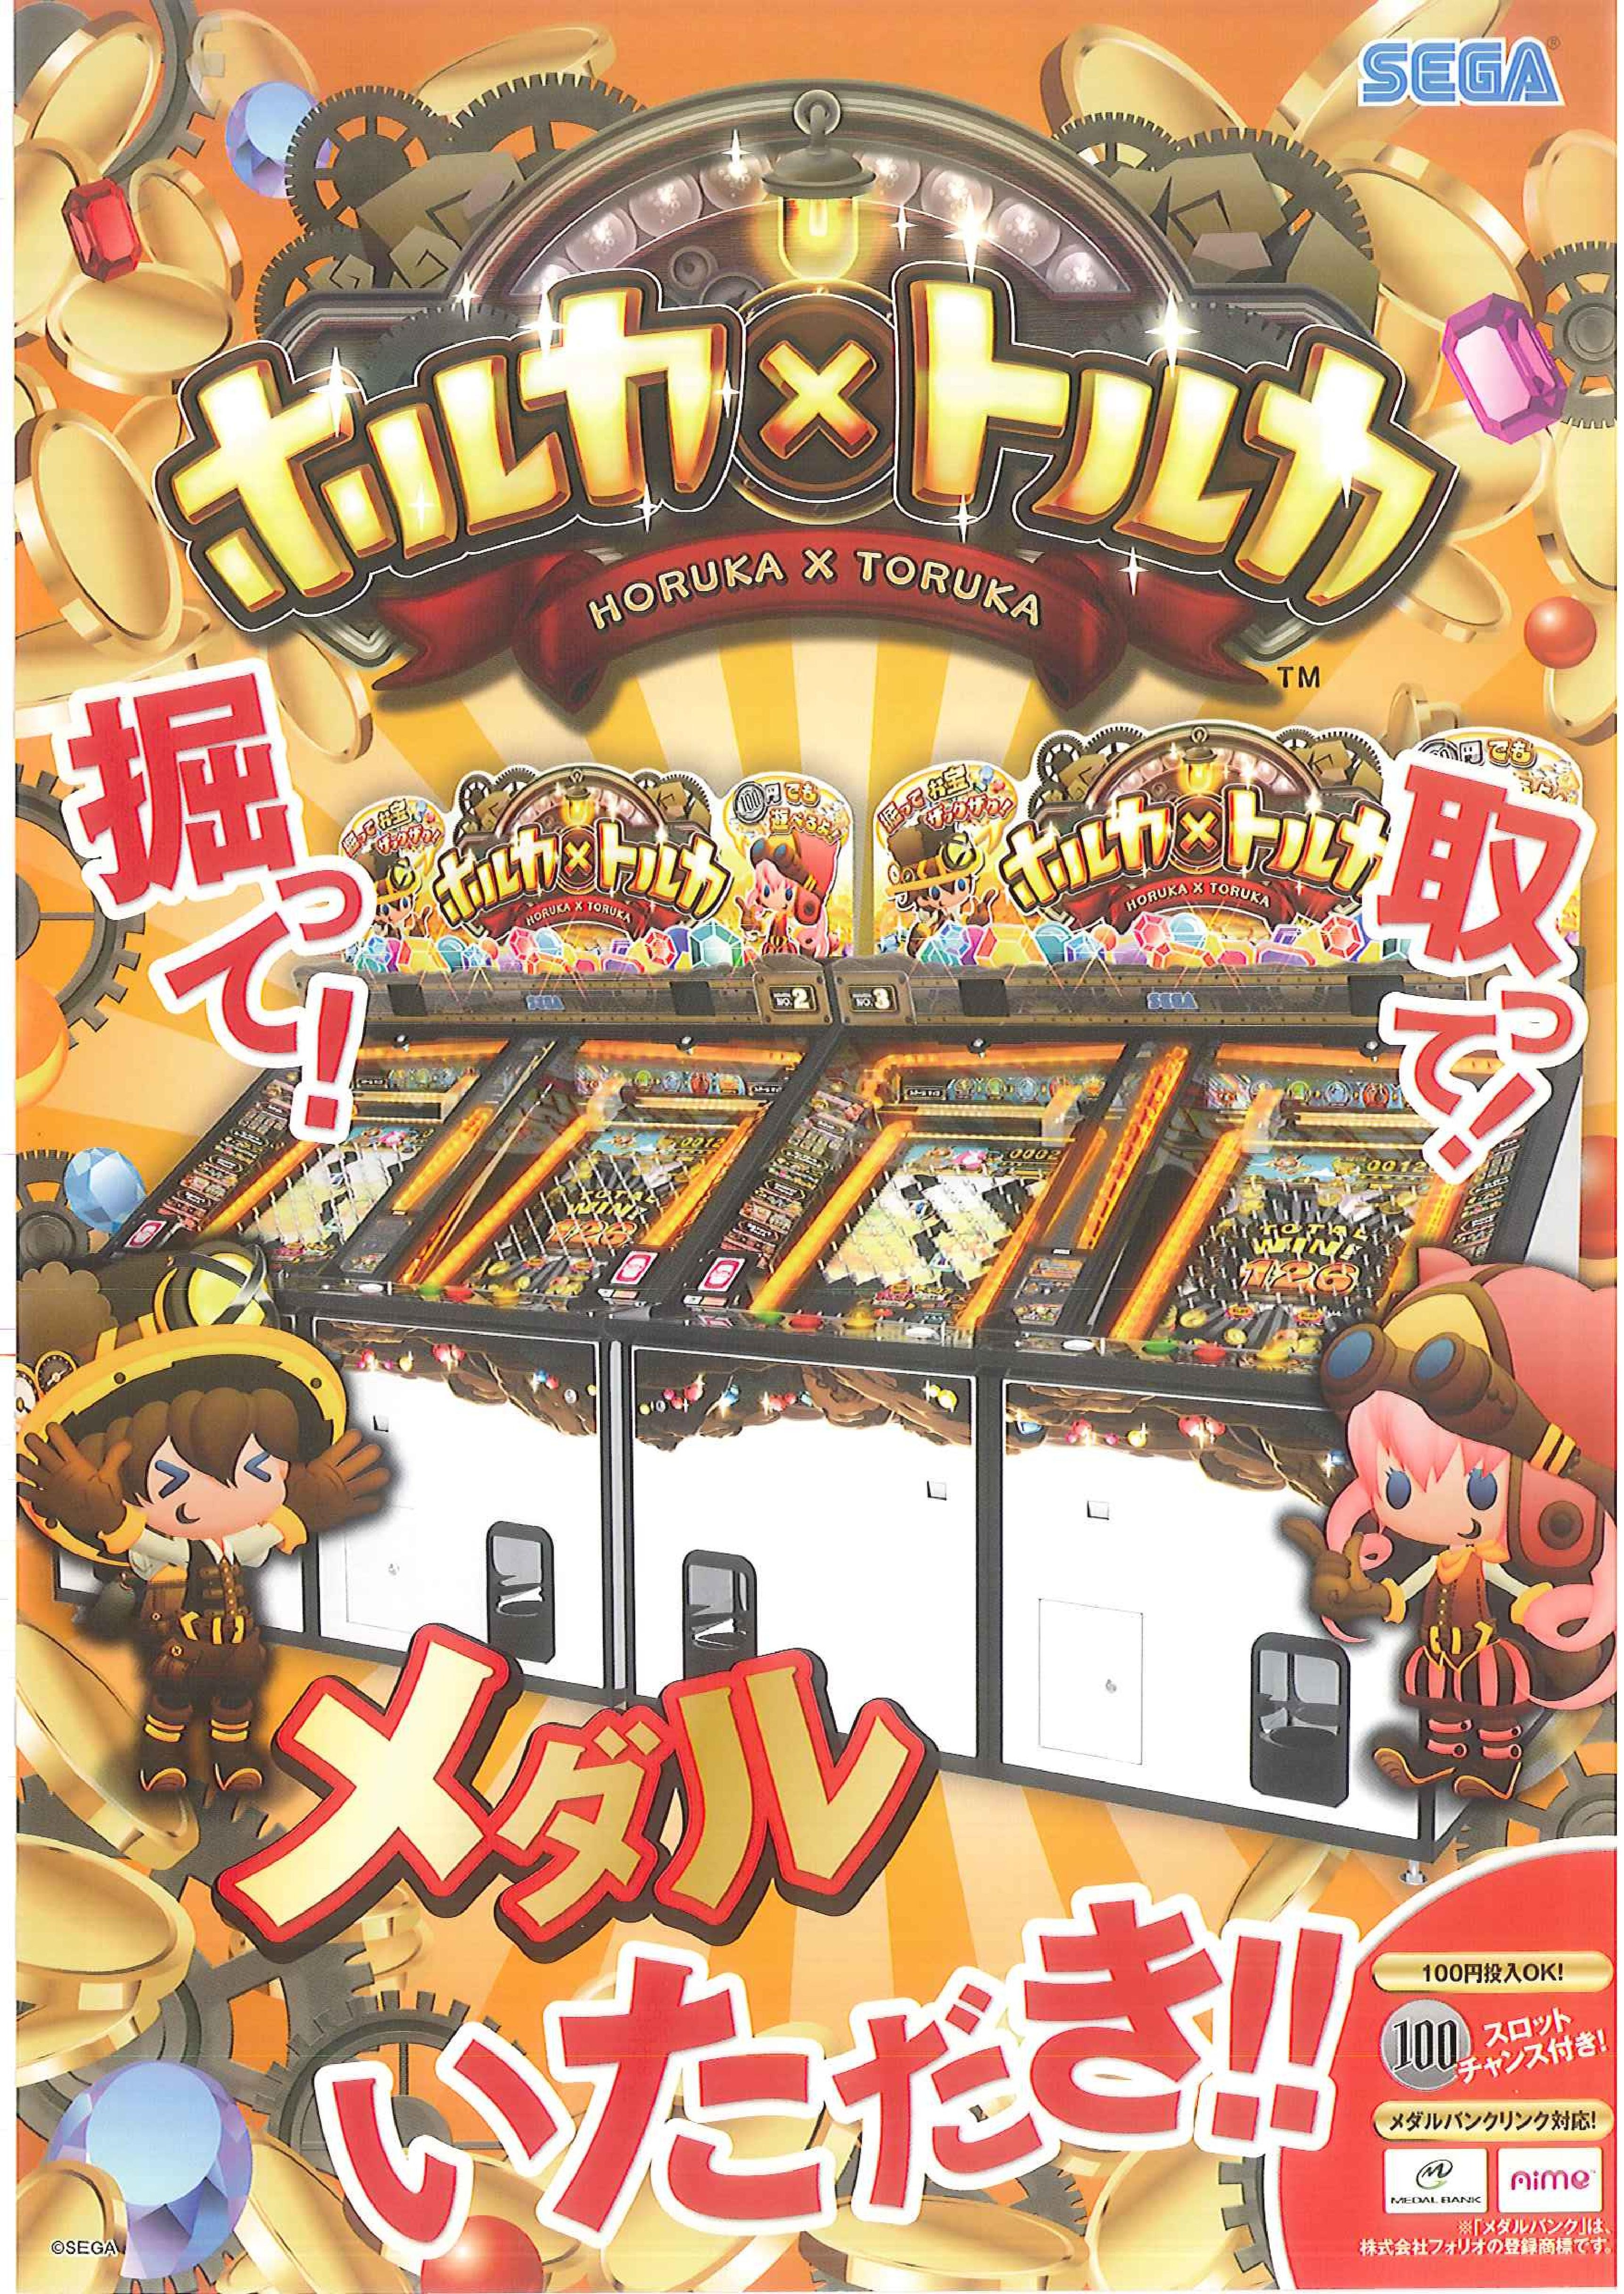 HorukaxToruka Arcade JP Flyer.pdf